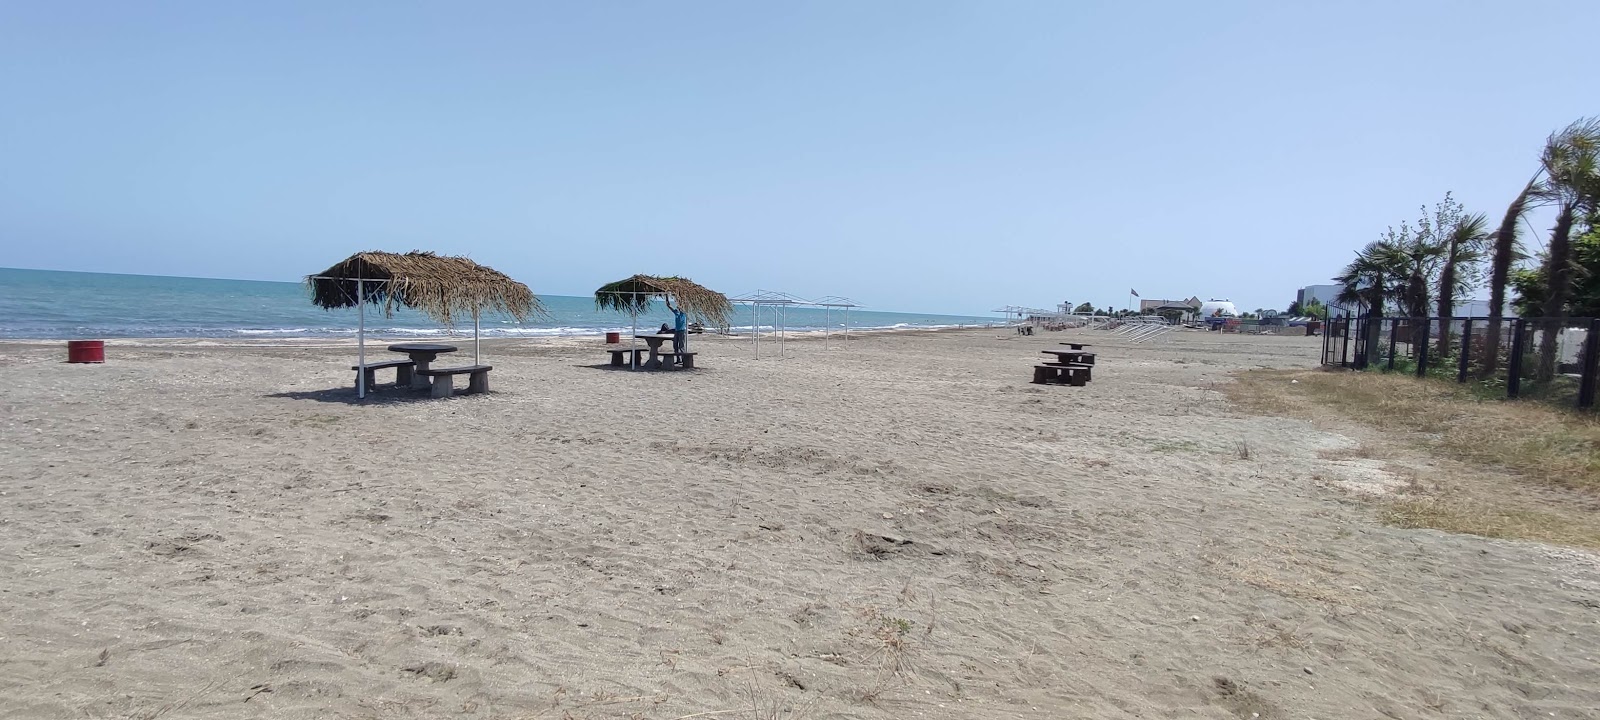 Foto de Astara Beach con parcialmente limpio nivel de limpieza